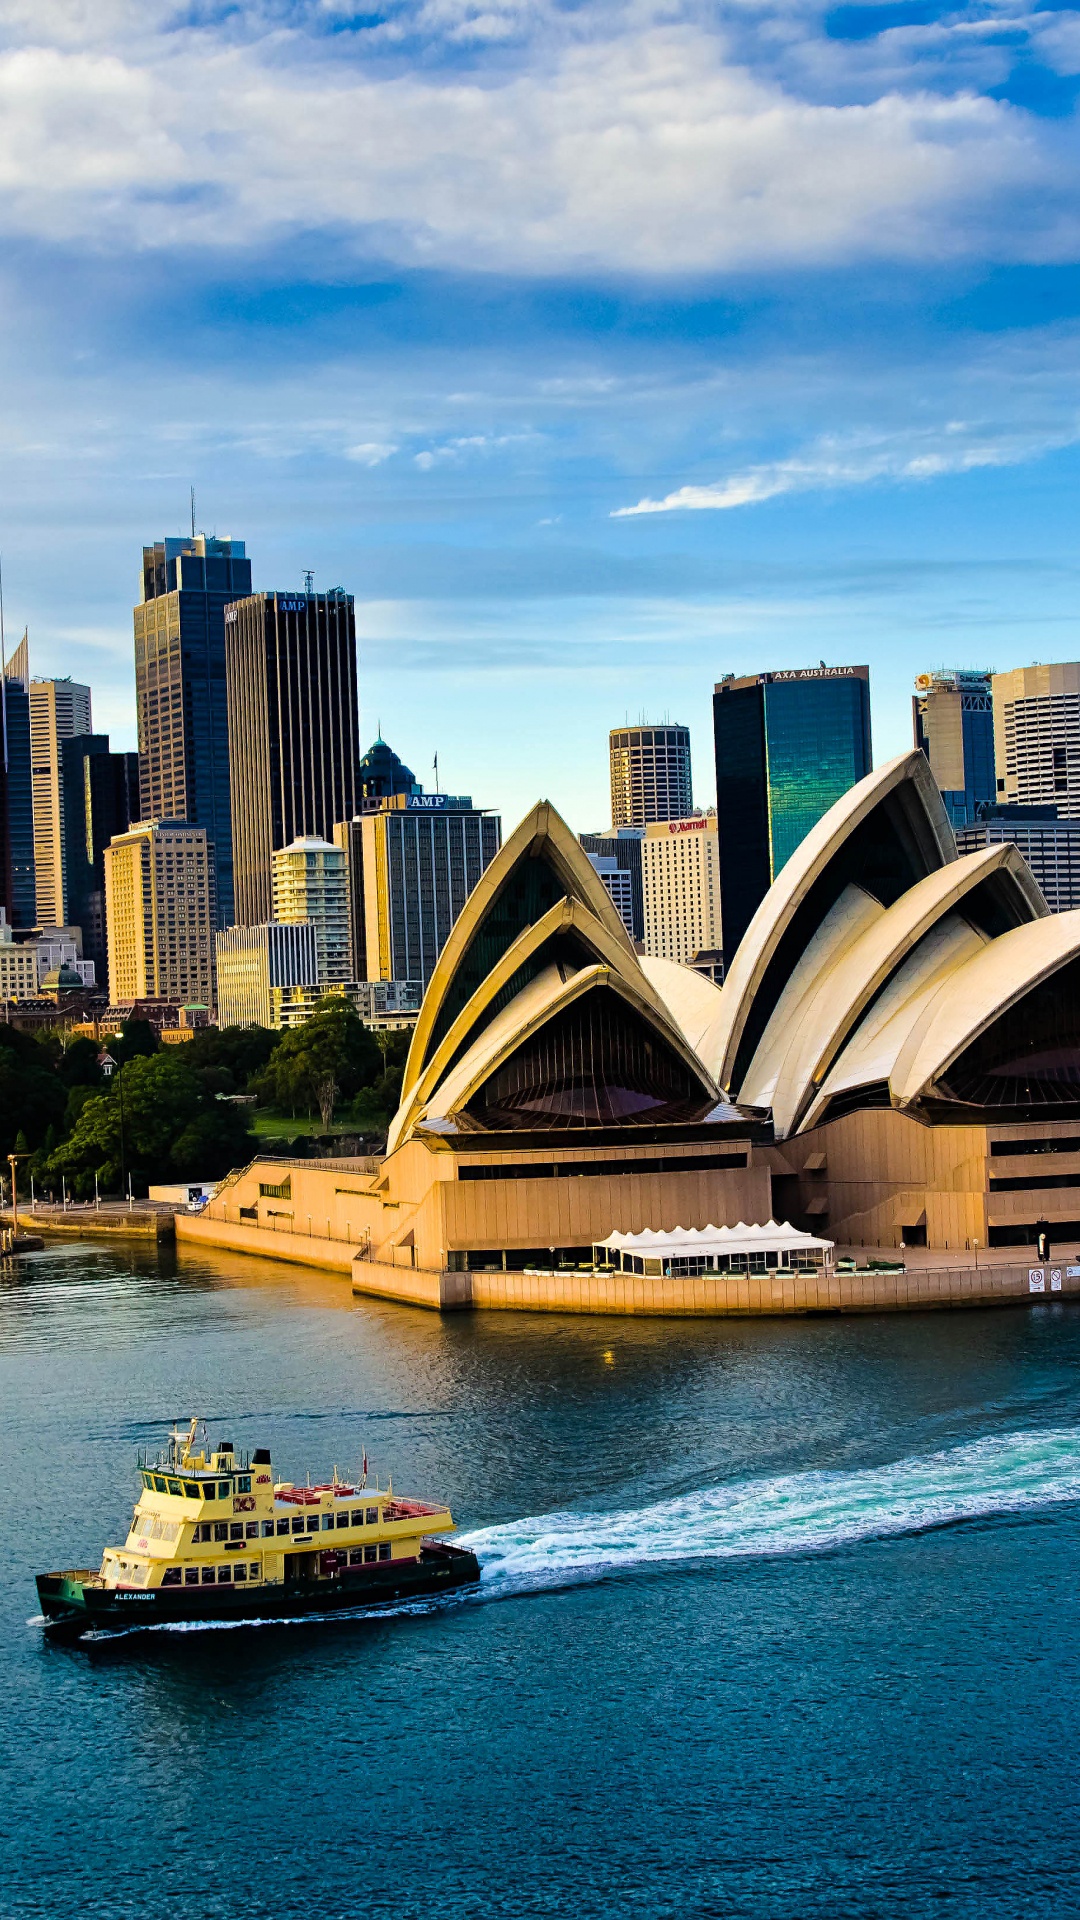 悉尼歌剧院, 歌剧院, 水运, 城市景观, 城市 壁纸 1080x1920 允许